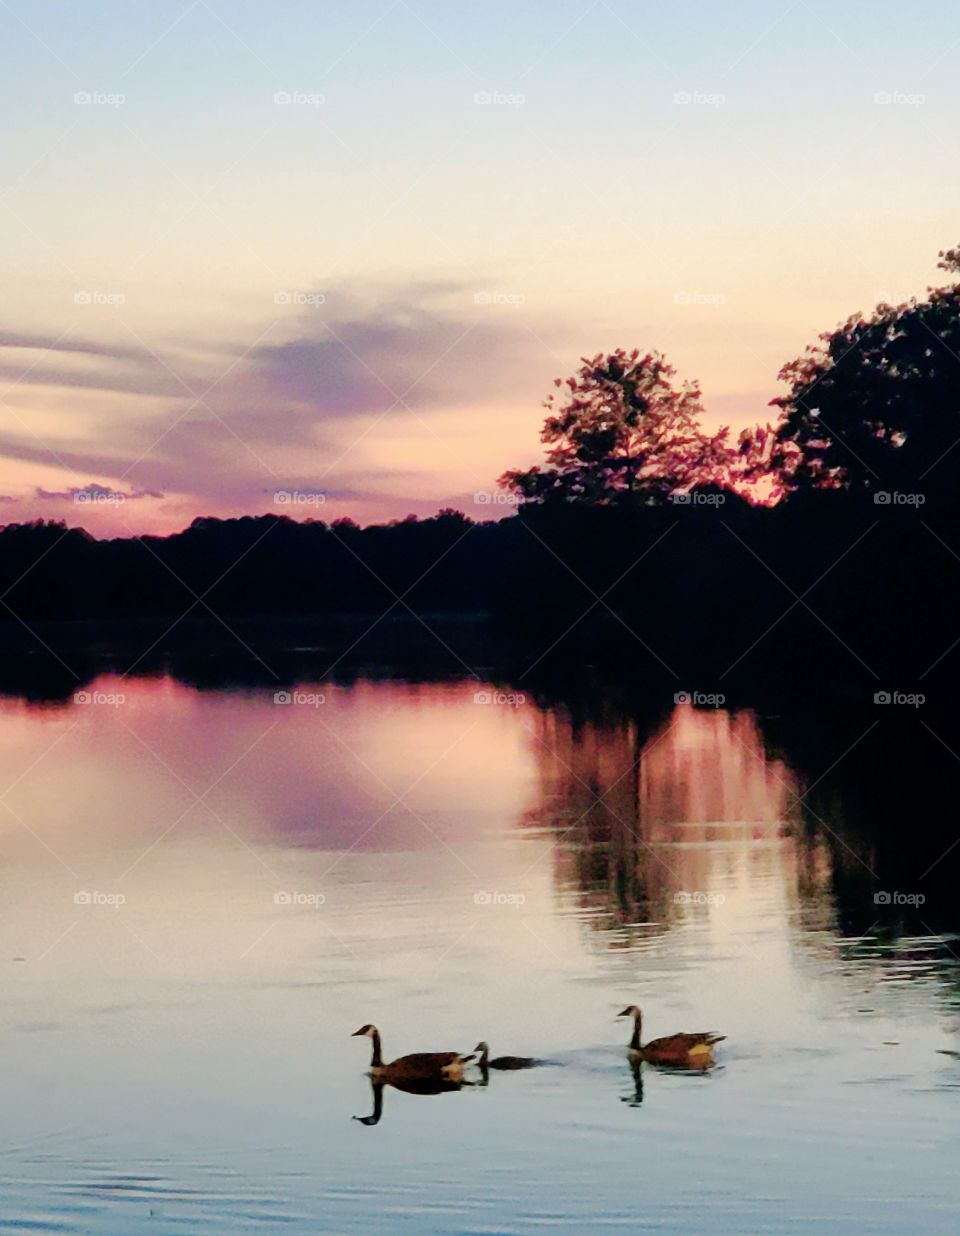 ducks swimming across river at sunset